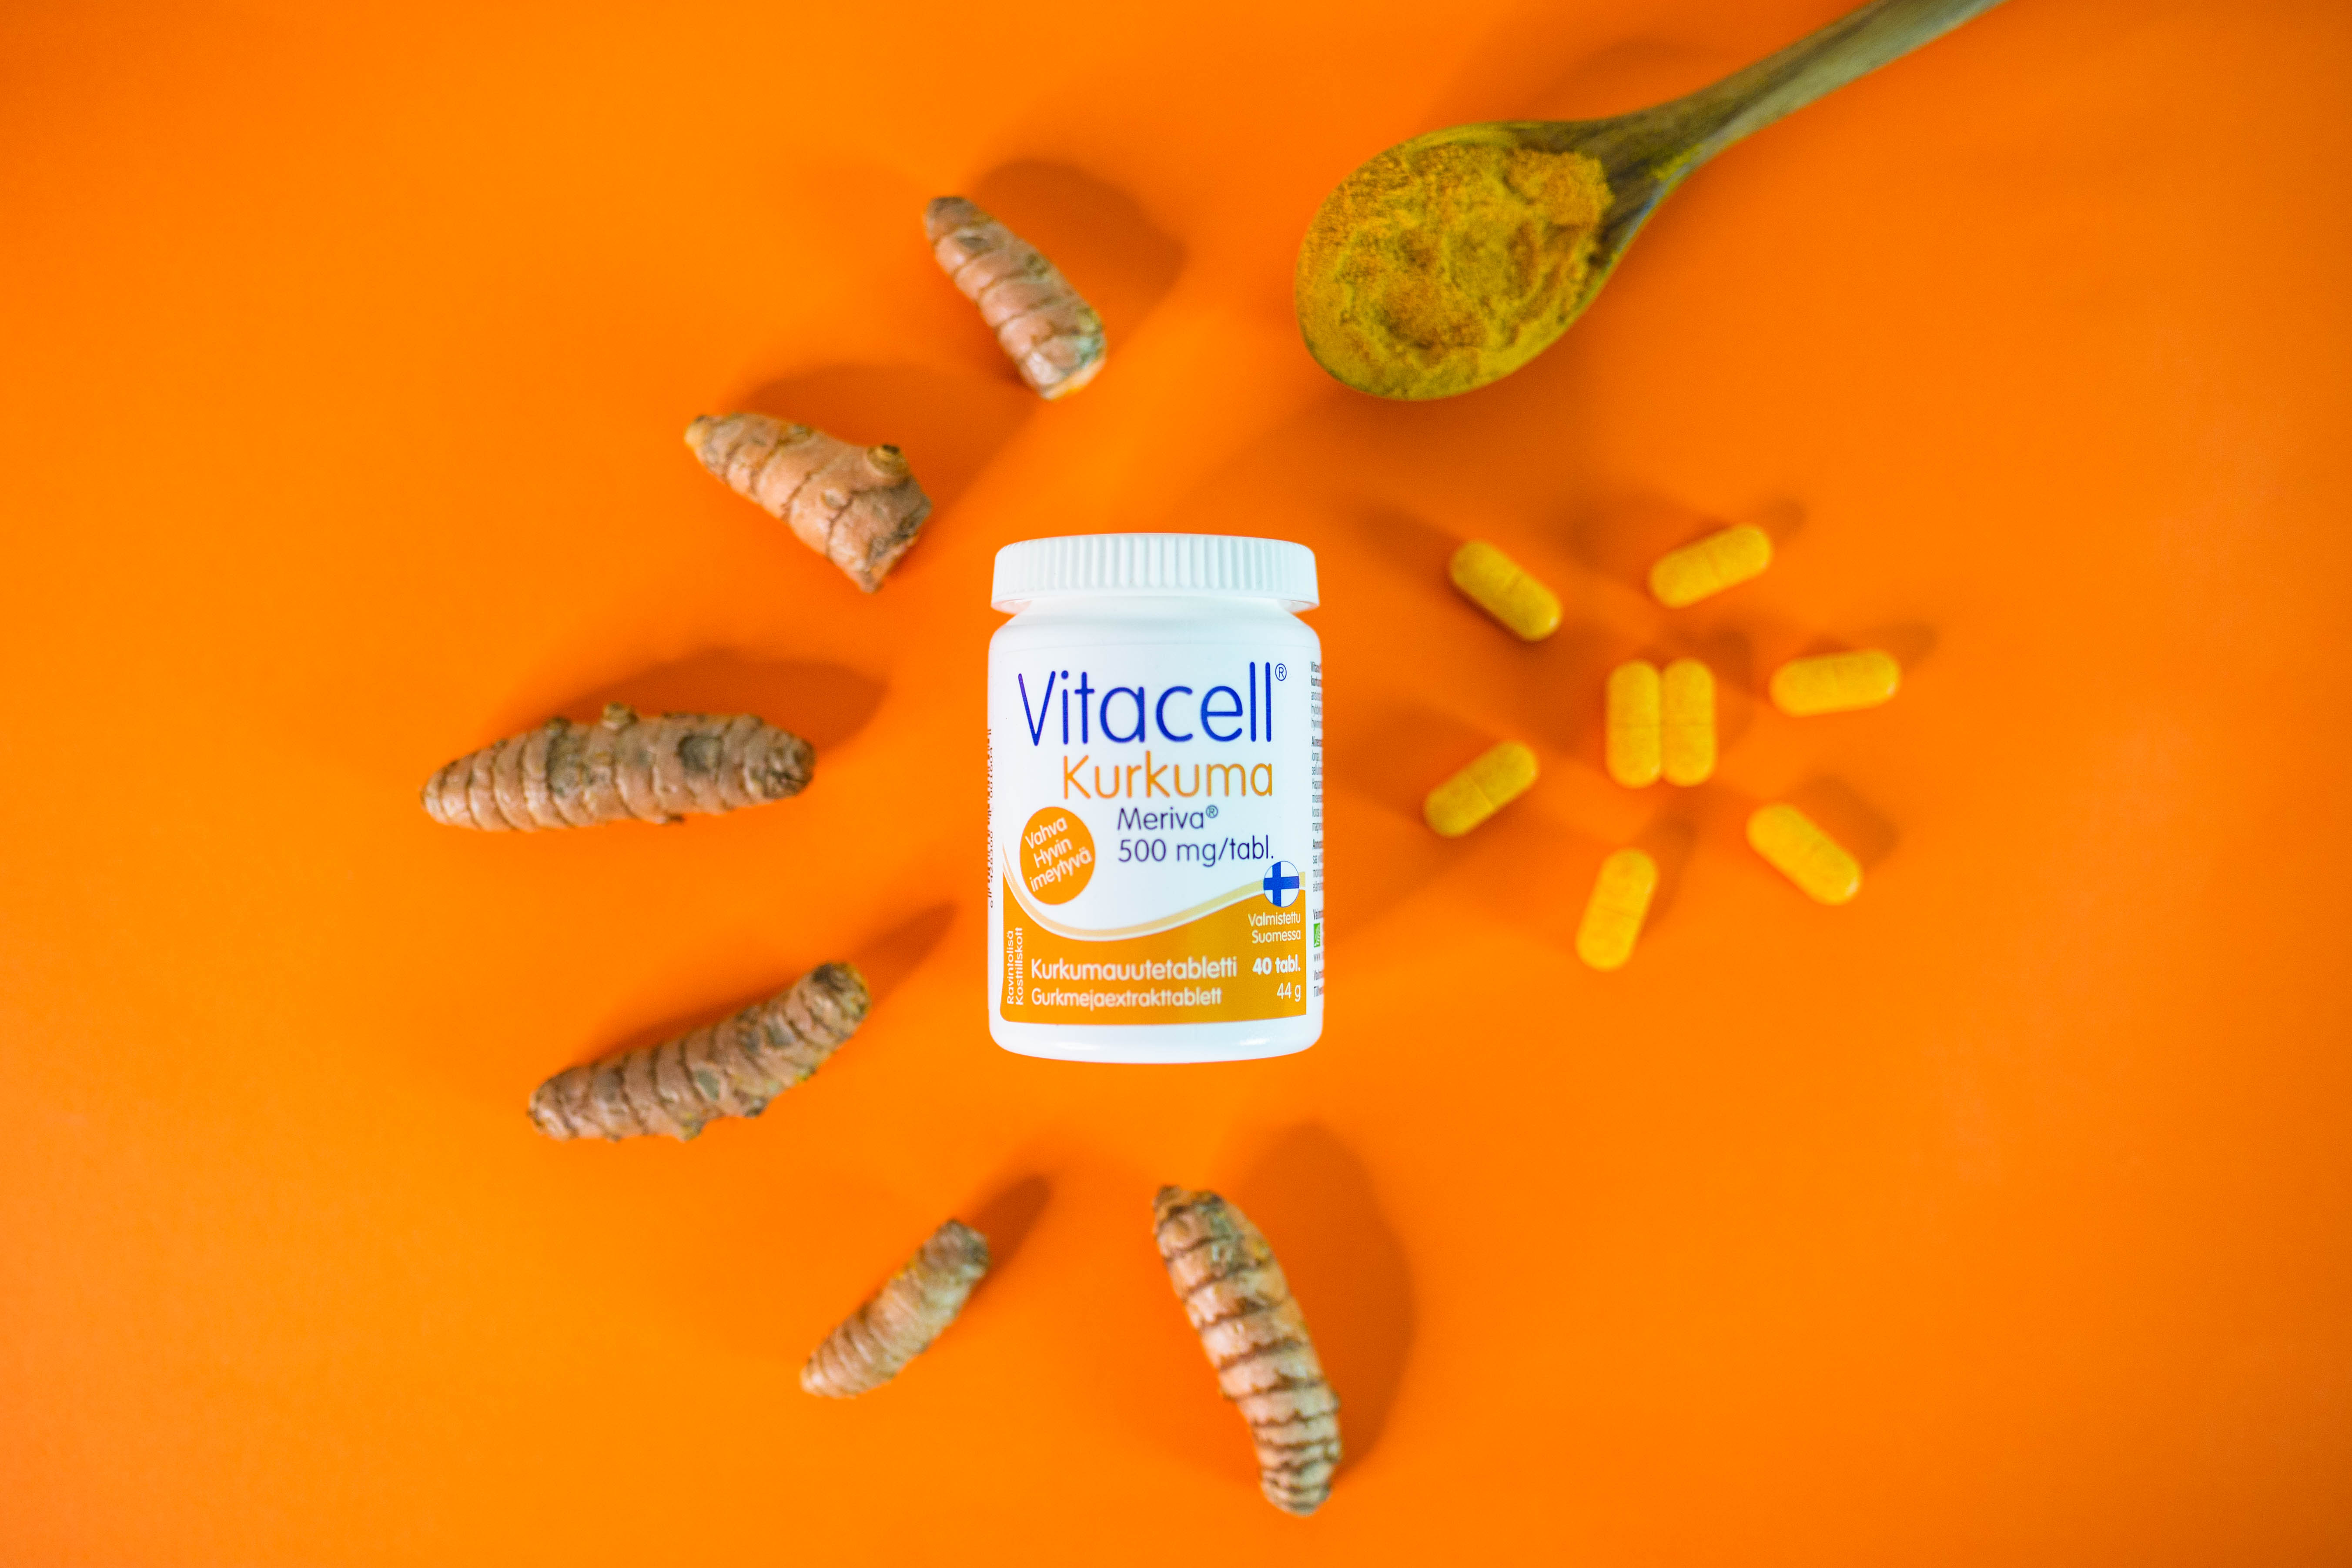 Vitacell Kurkuma -ravintolisä sisältää korkealuokkaista hyvin imeytyvää Meriva-kurkumauutetta, joka vaikuttaa monipuolisesti kehon hyvinvointiin.